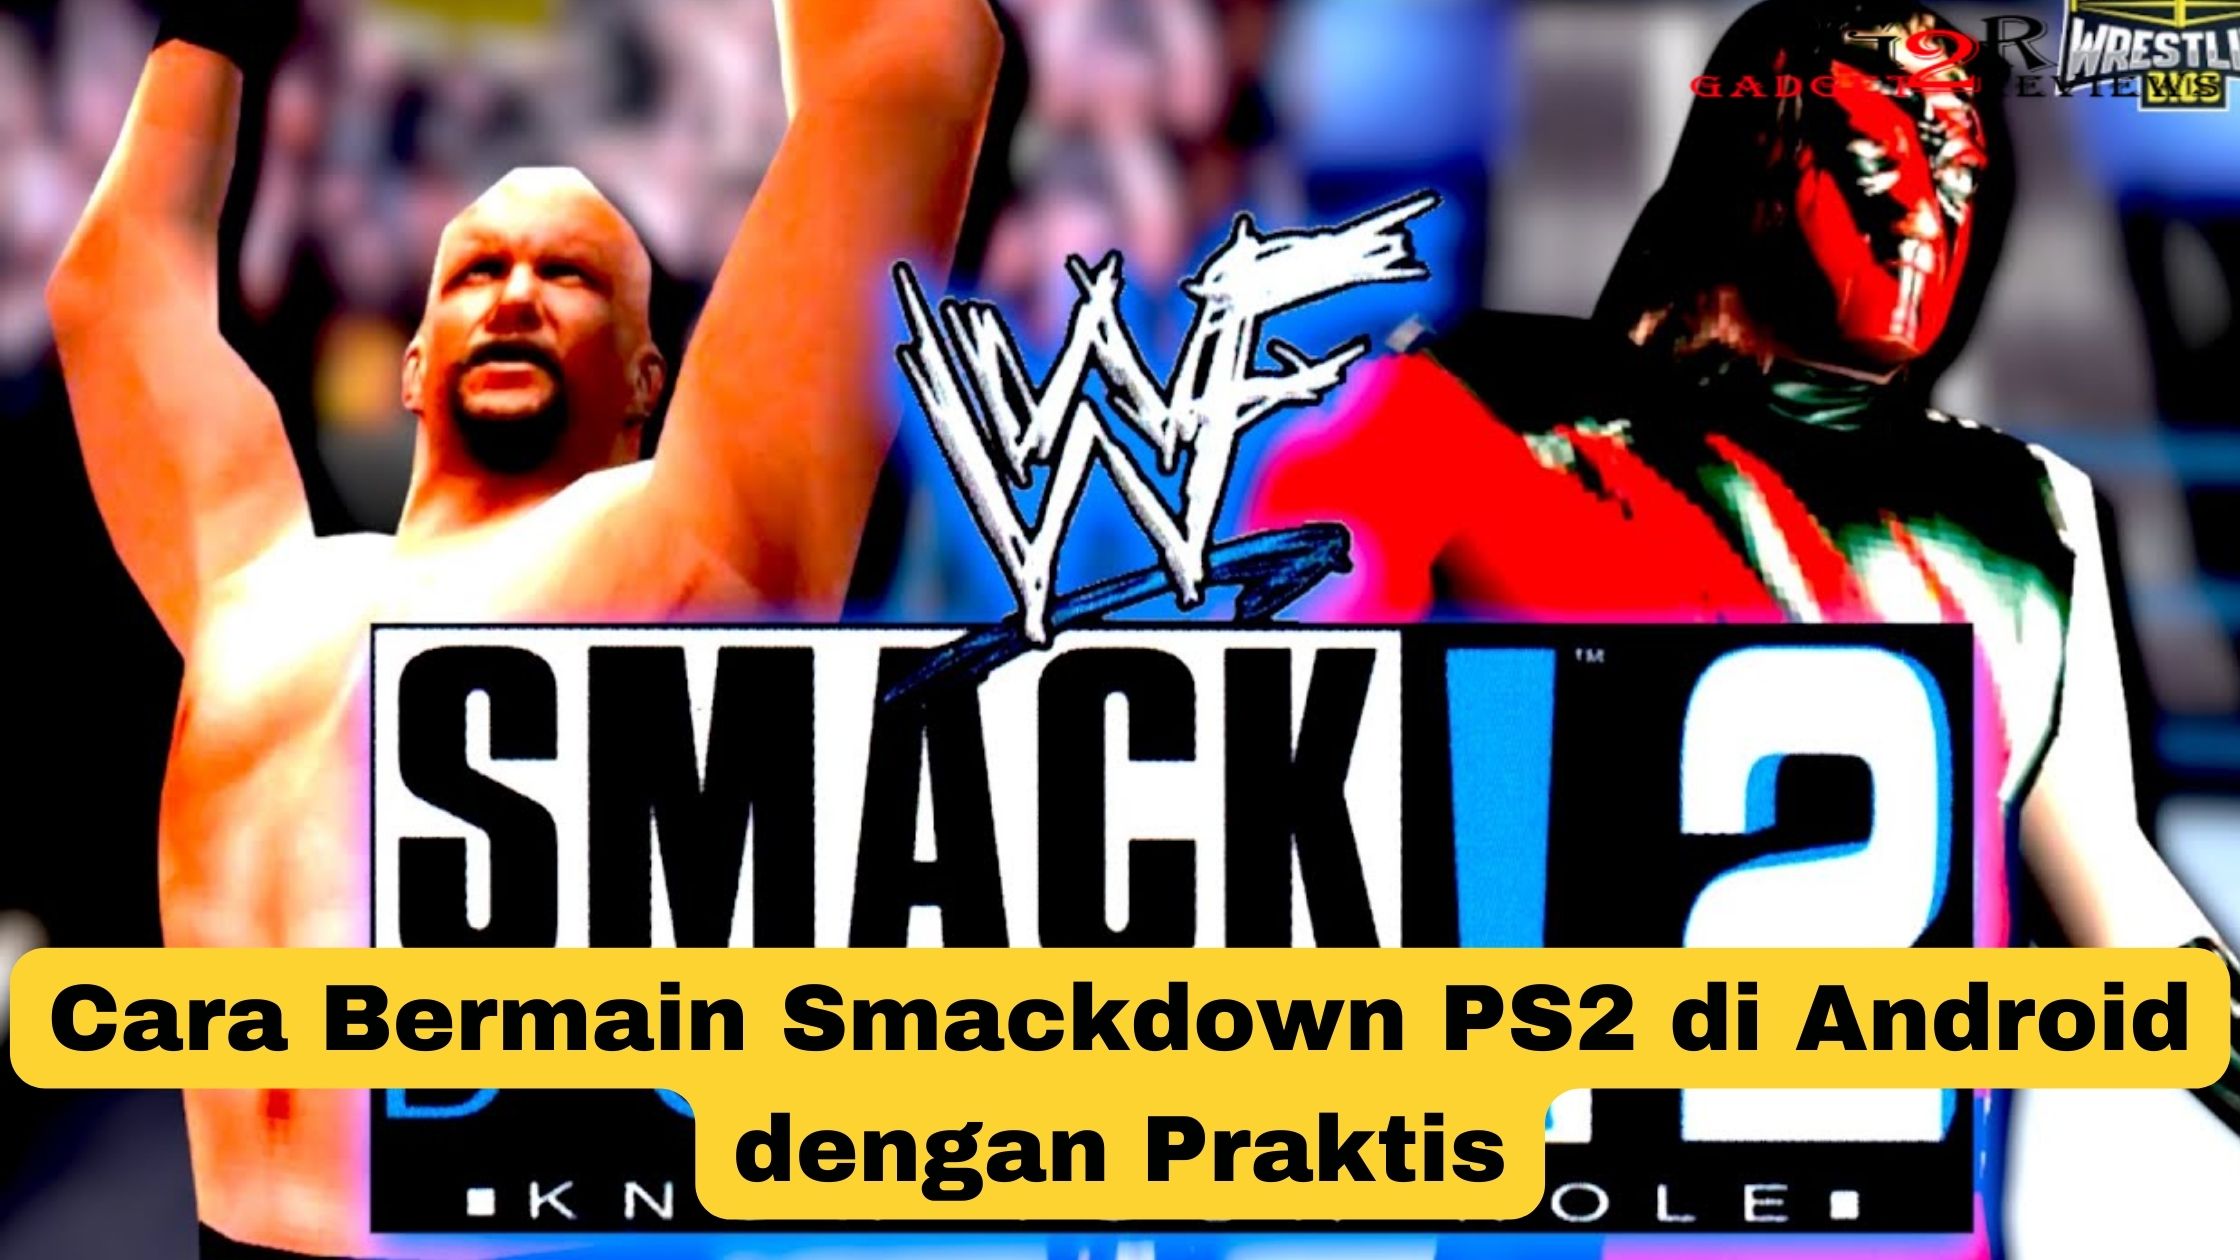 Cara Bermain Smackdown PS2